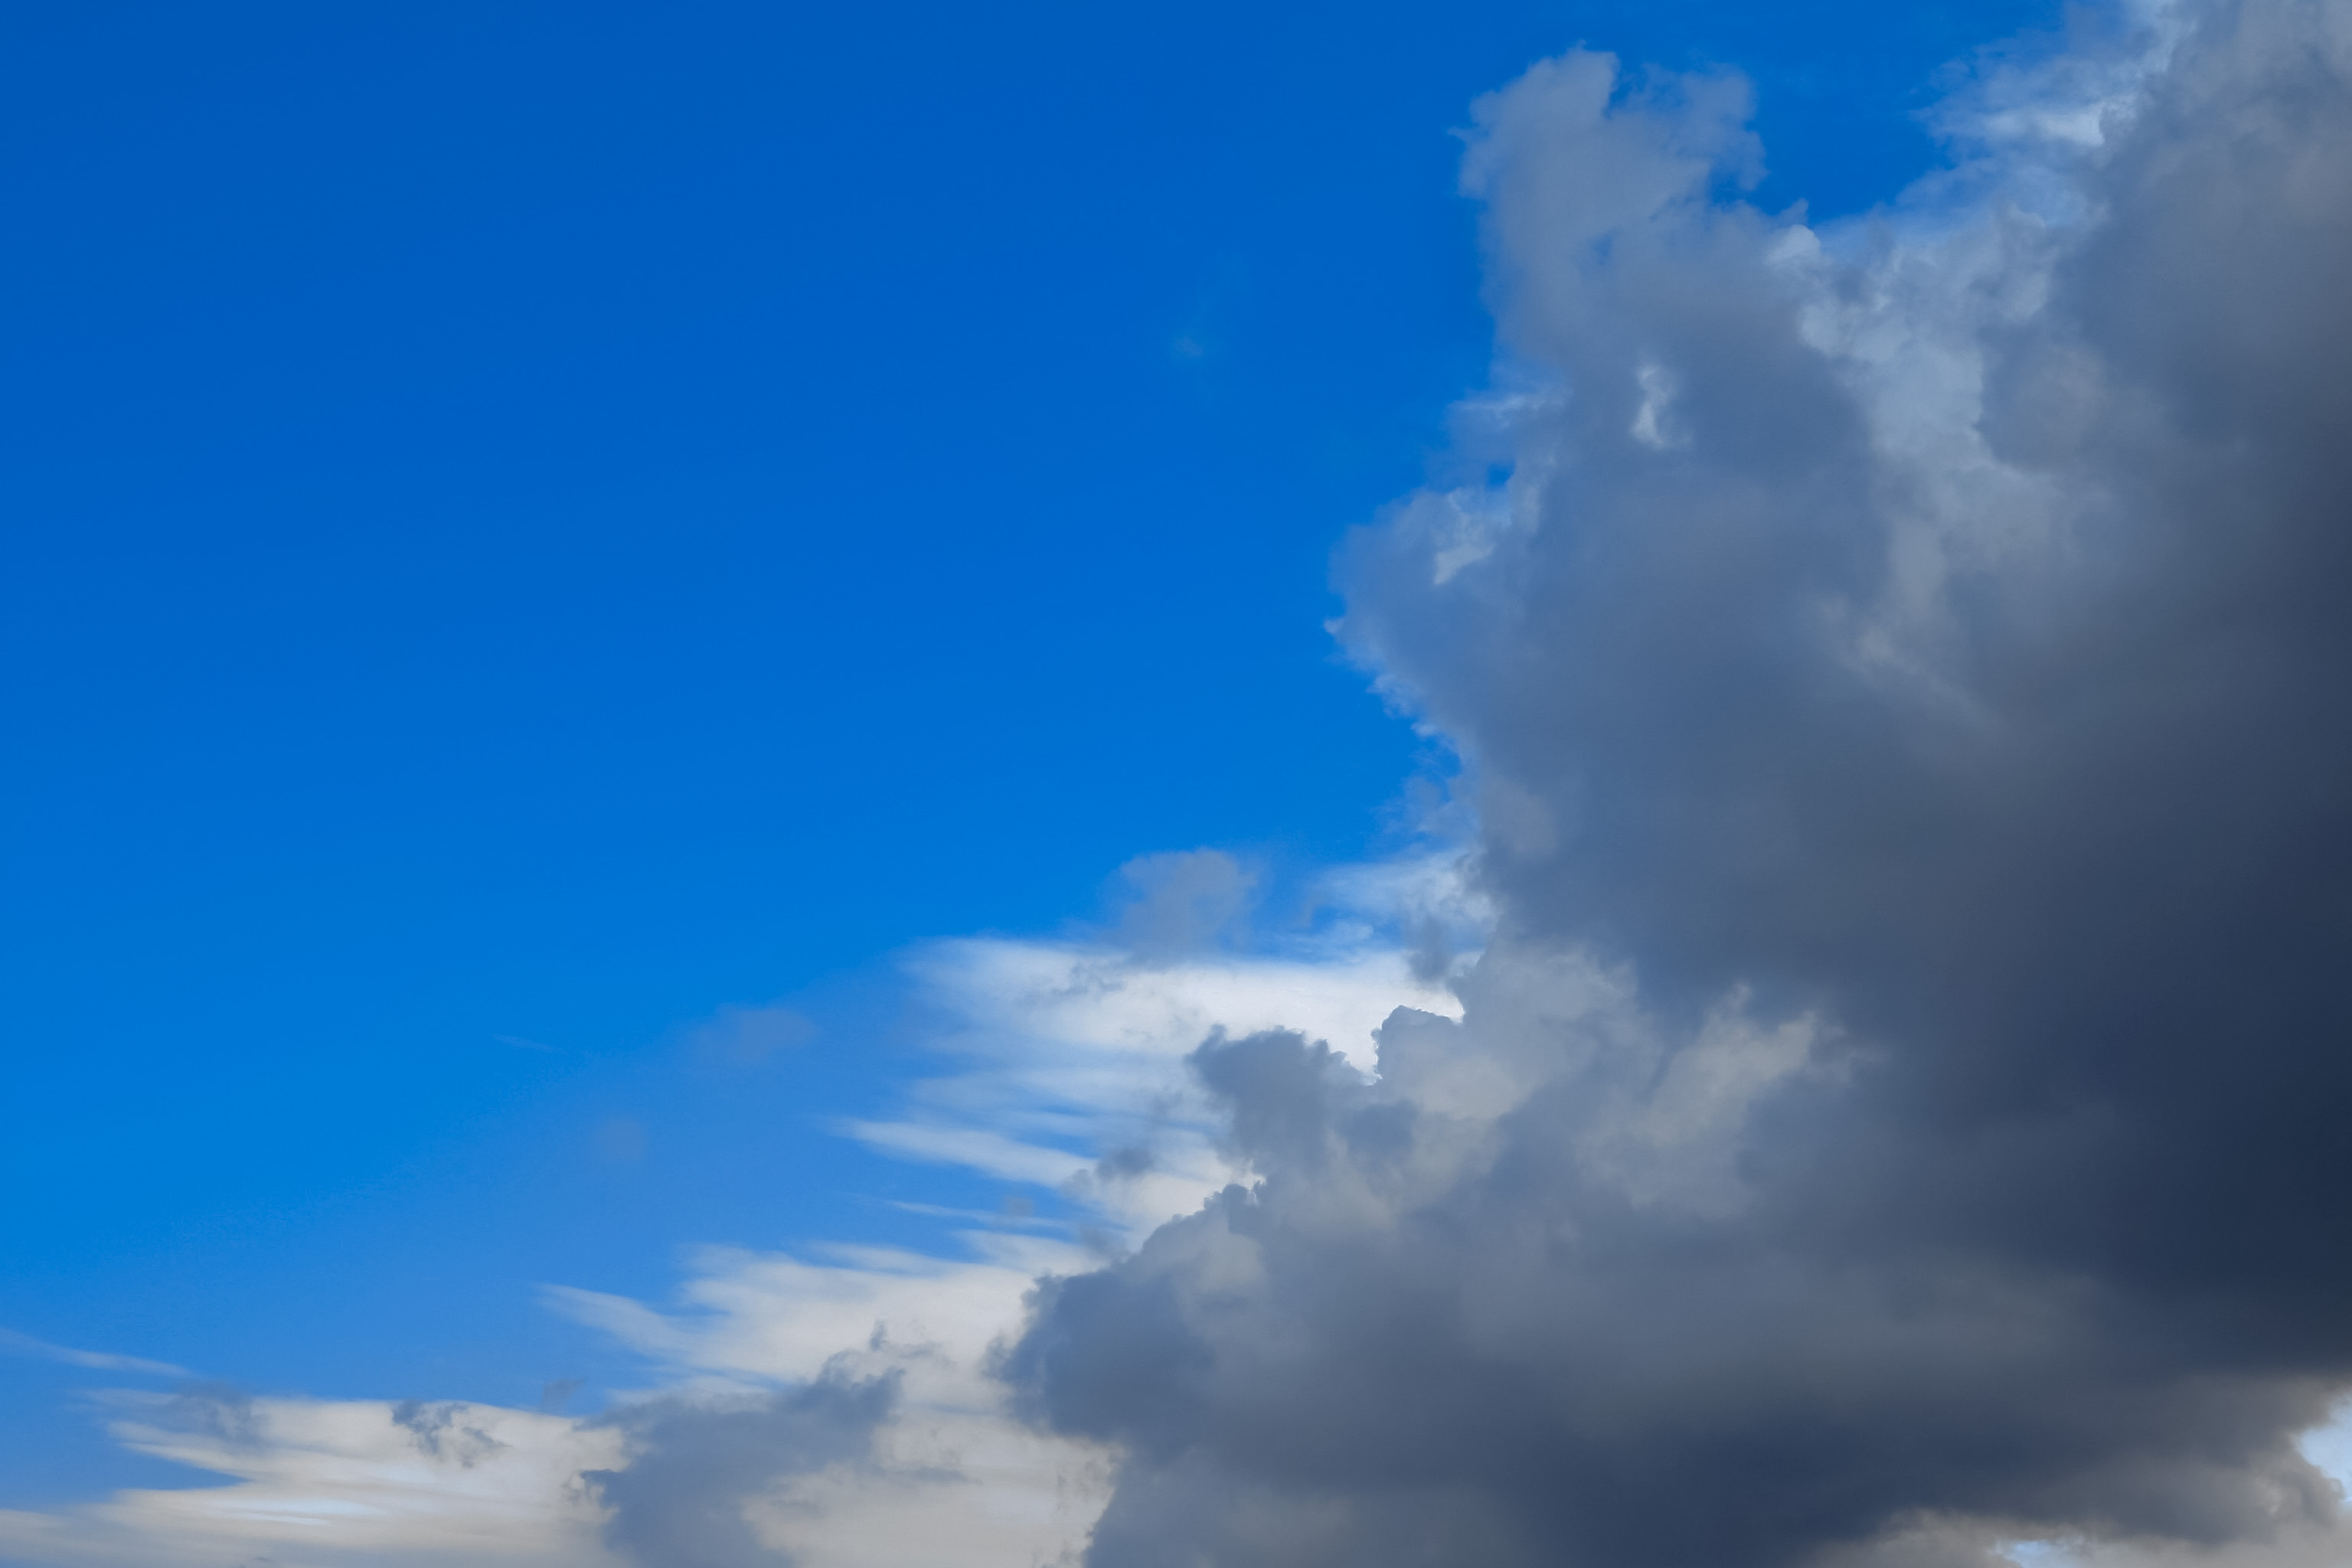 晴天に近づく雨雲 Free Photos L/RGB/JPEG/350dpi